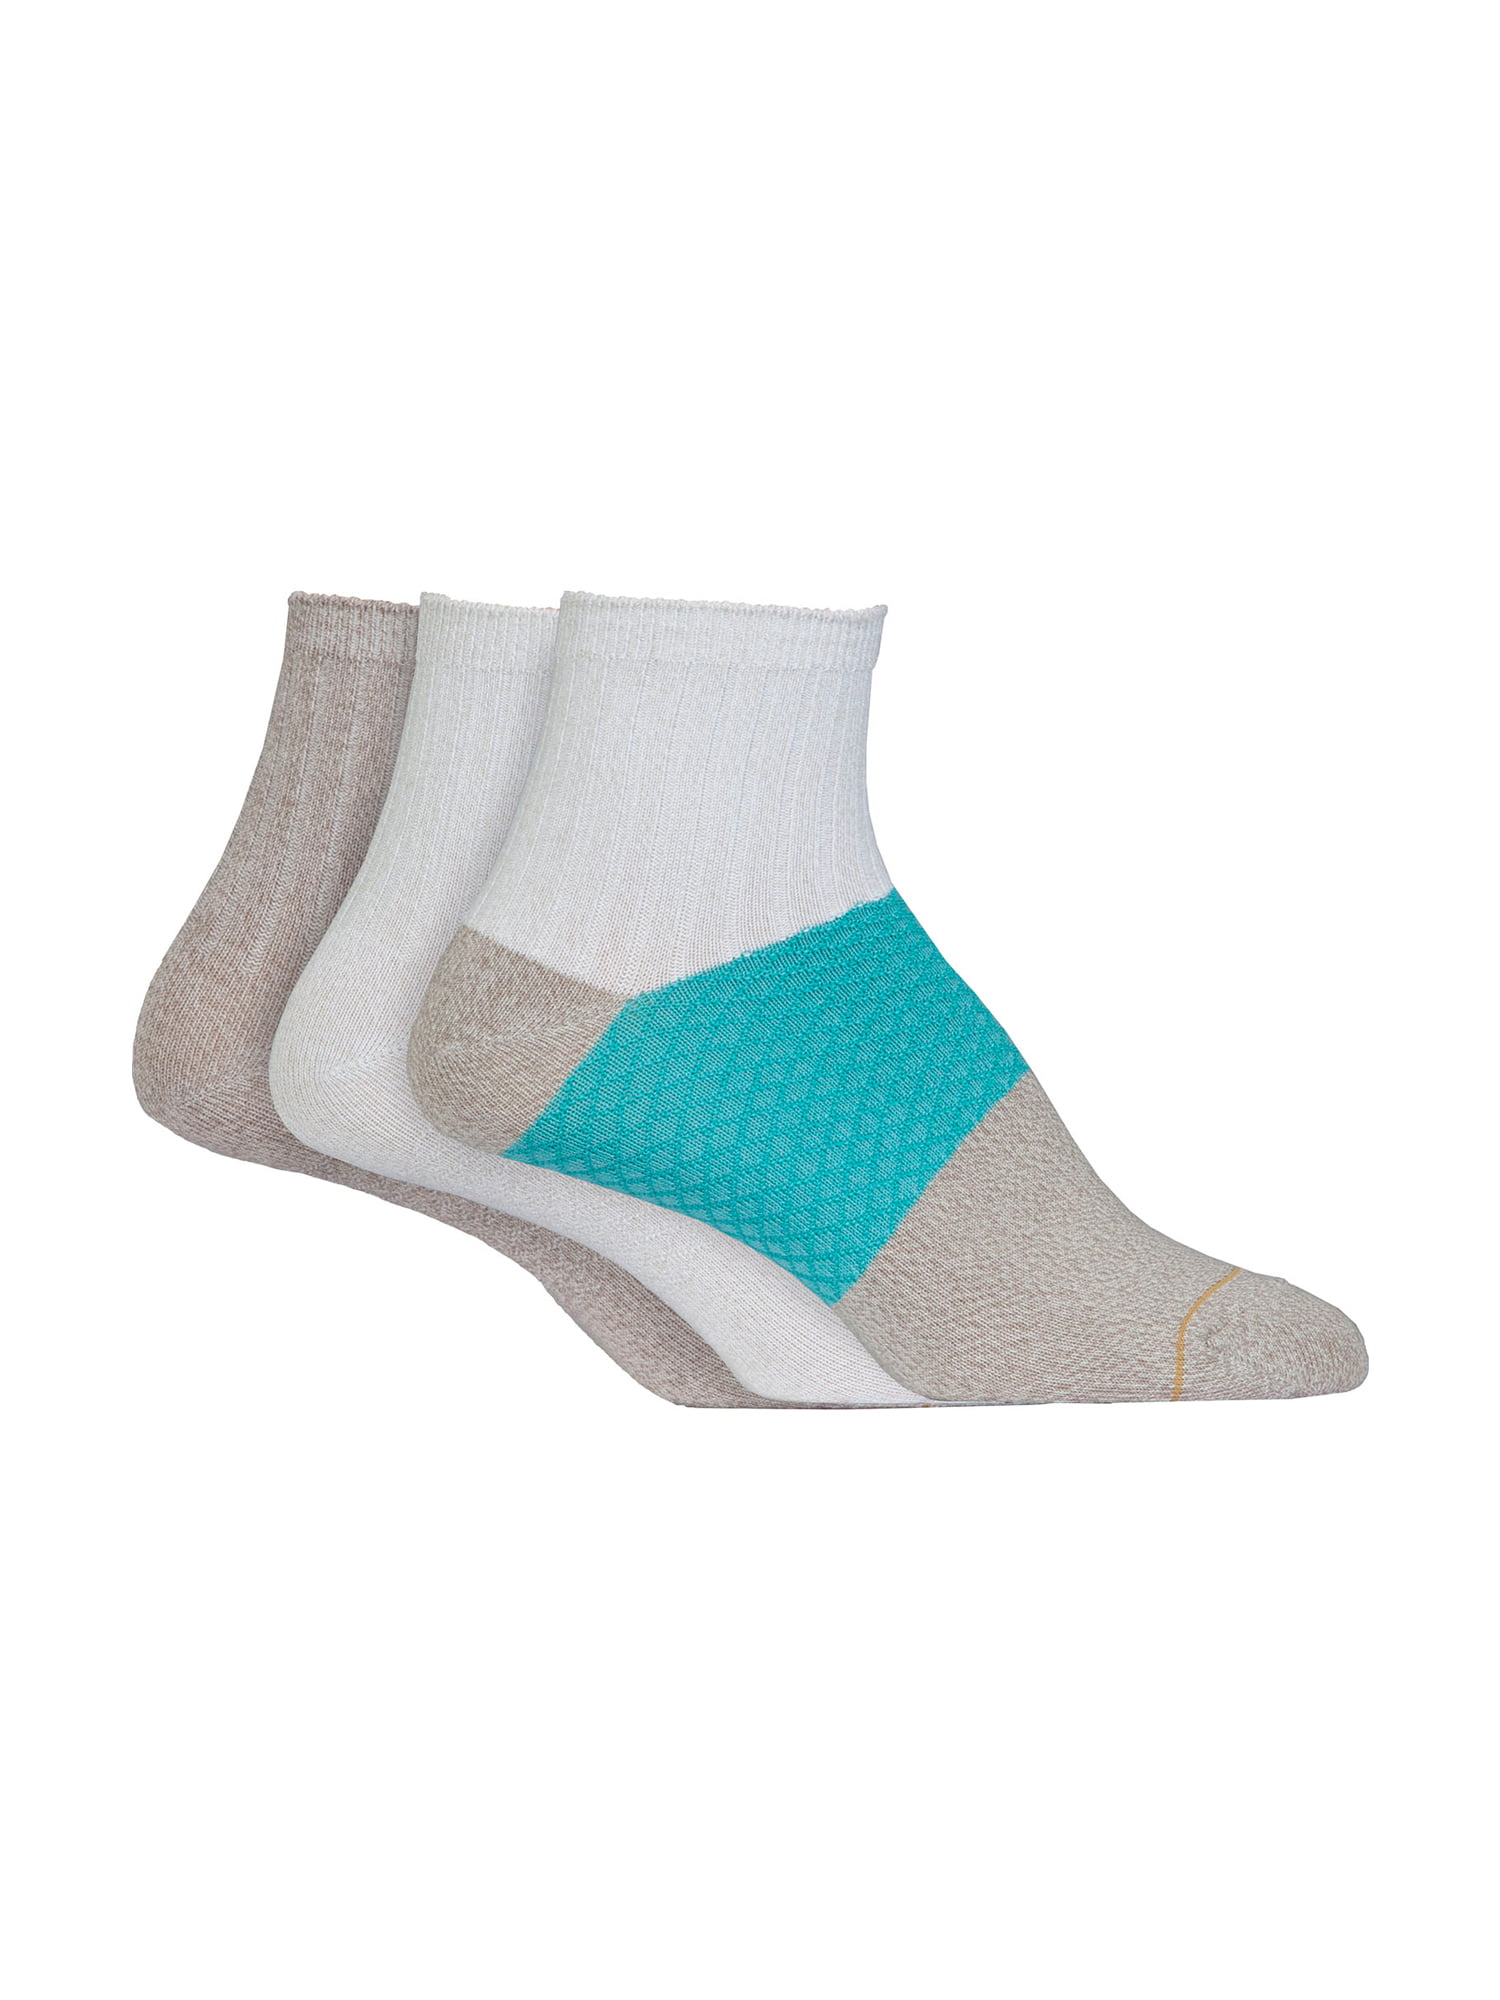 GT by GOLDTOE Ladies Super Soft Ankle Socks, 3-pack - Walmart.com